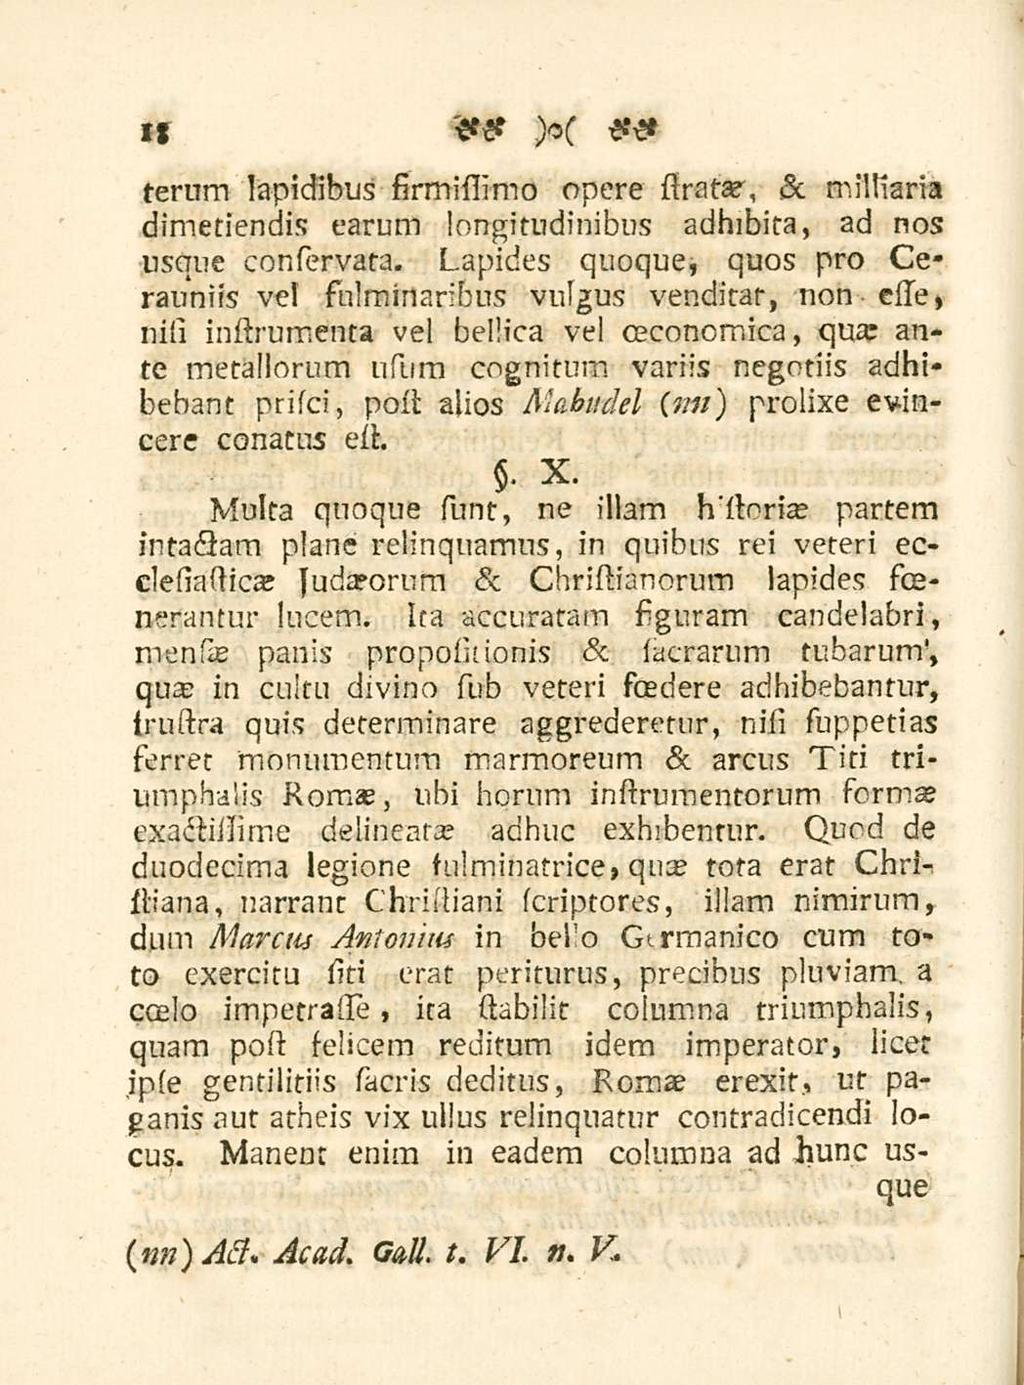 18 terum lapidibus firmissimo opere stratae, <sc militaria dimetiendis earum longitudinibus adhibita, ad nos usque conservata.